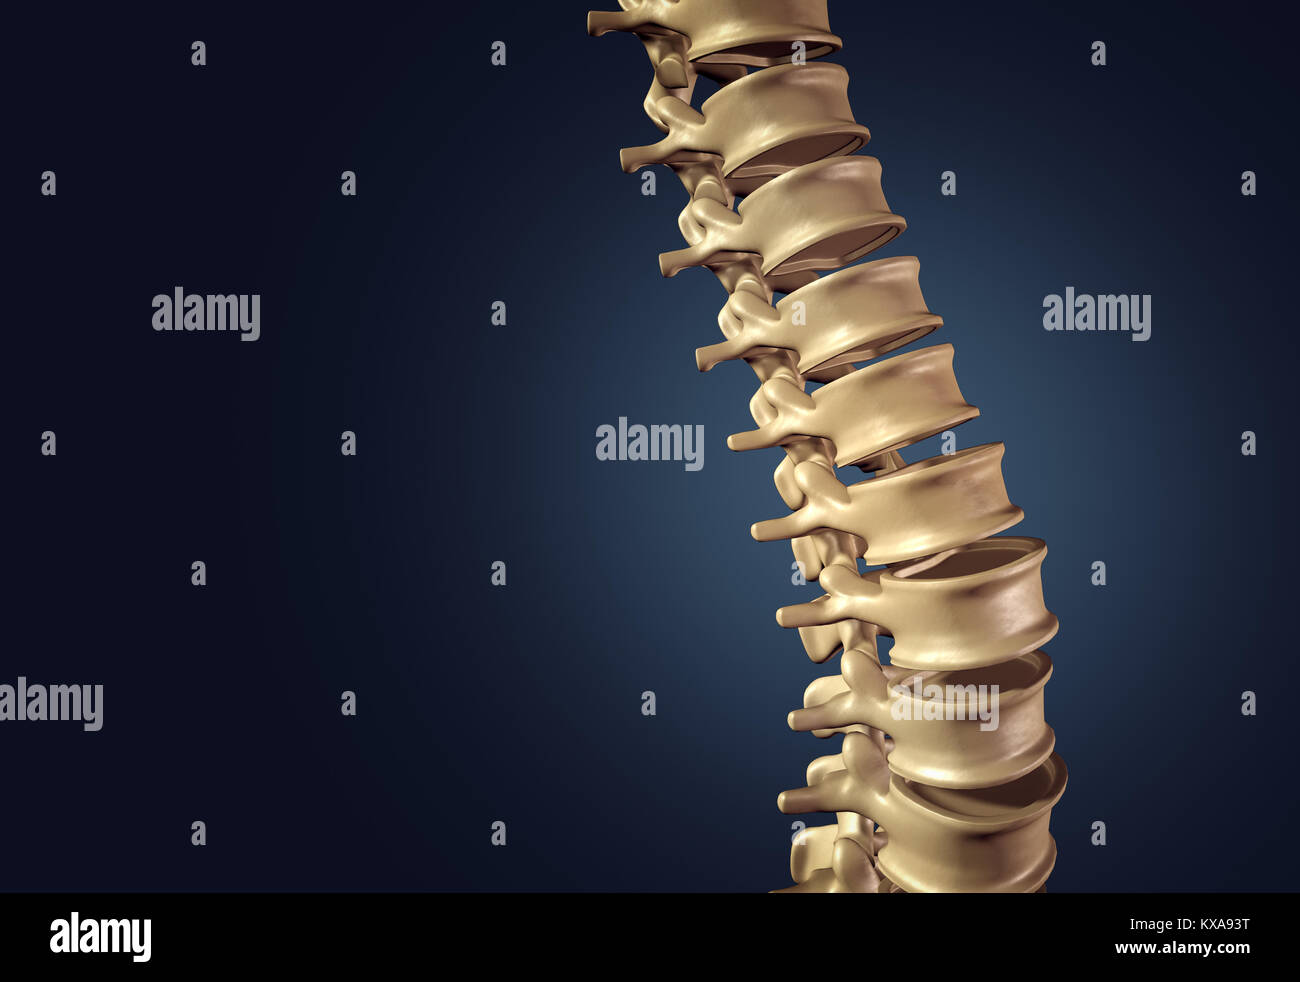 Columna vertebral humana esquelética y columna vertebral o discos intervertebrales sobre un fondo oscuro como un concepto médico como una ilustración 3D. Foto de stock